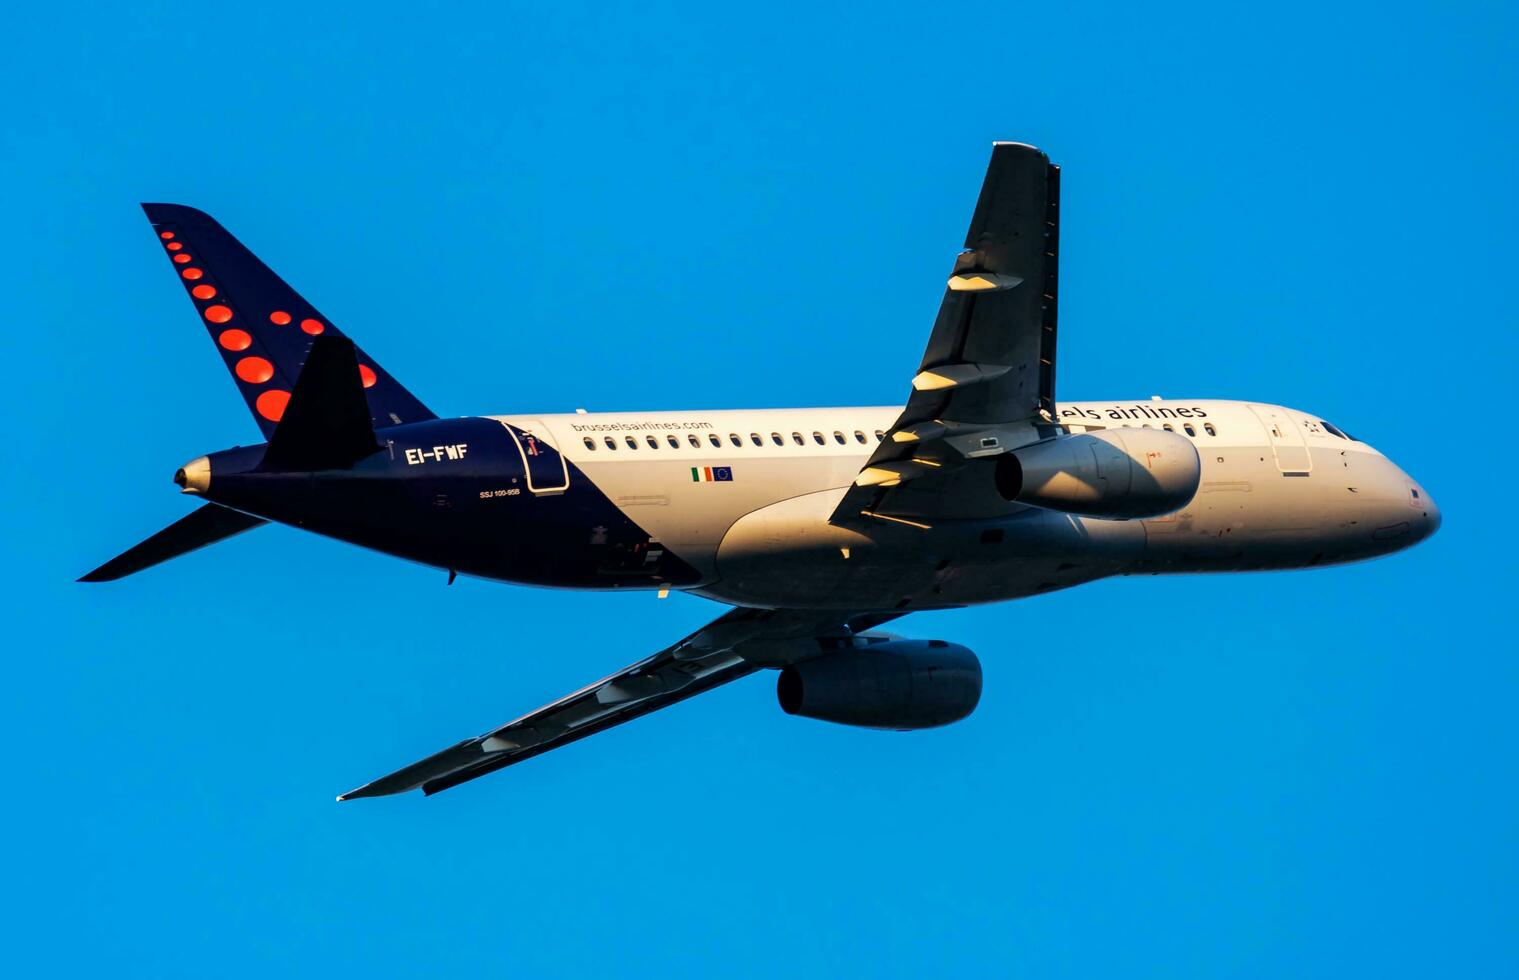 bryssel flygbolag sukhoi ssj-100 superjet ei-fwf passagerare plan avresa och ta av på wien flygplats foto